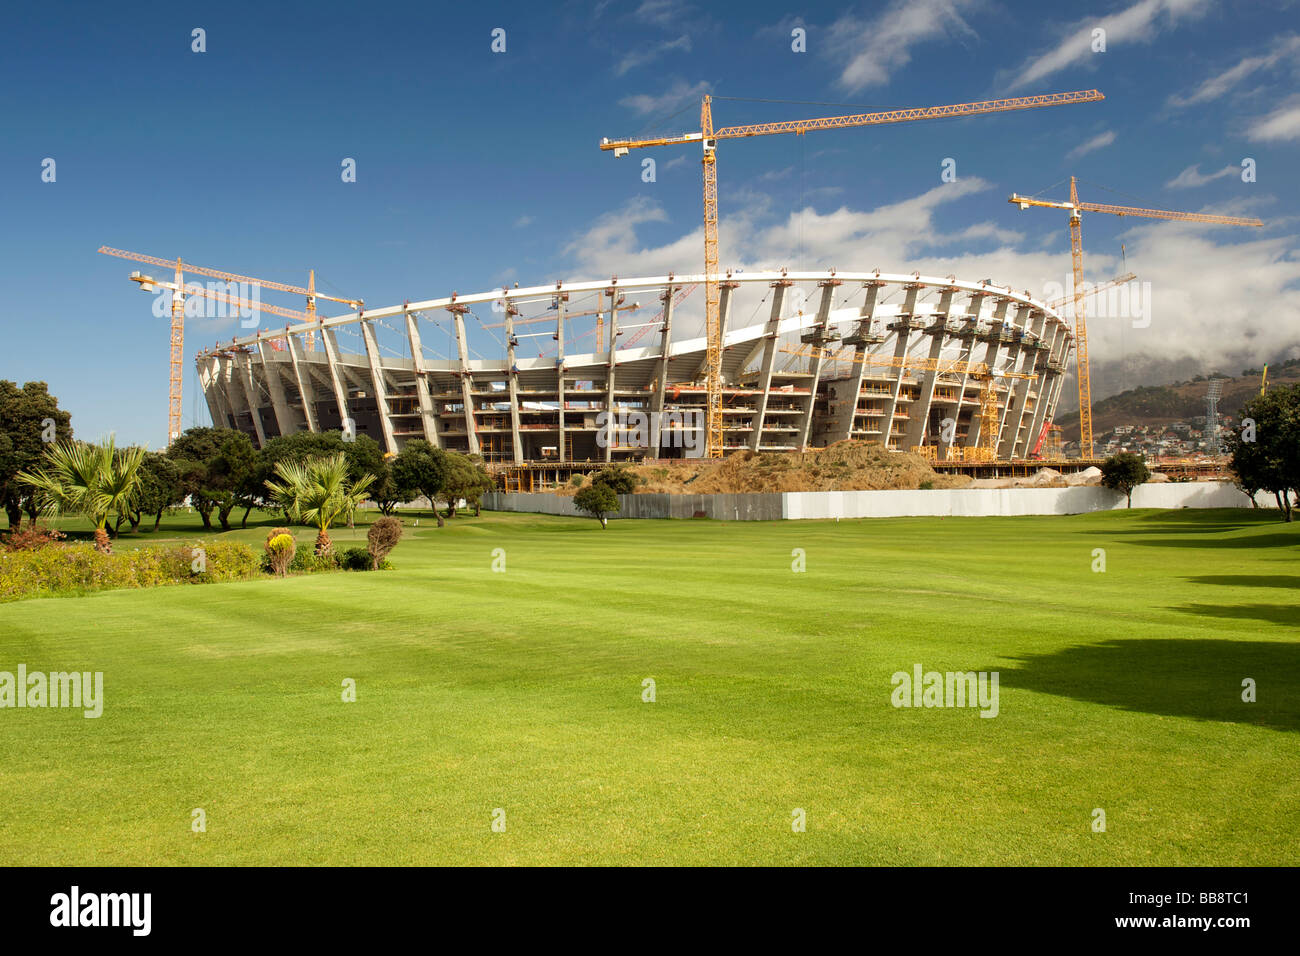 La Copa del Mundo FIFA 2010 estadio de fútbol en construcción en Cape Town, Sudáfrica. Foto de stock